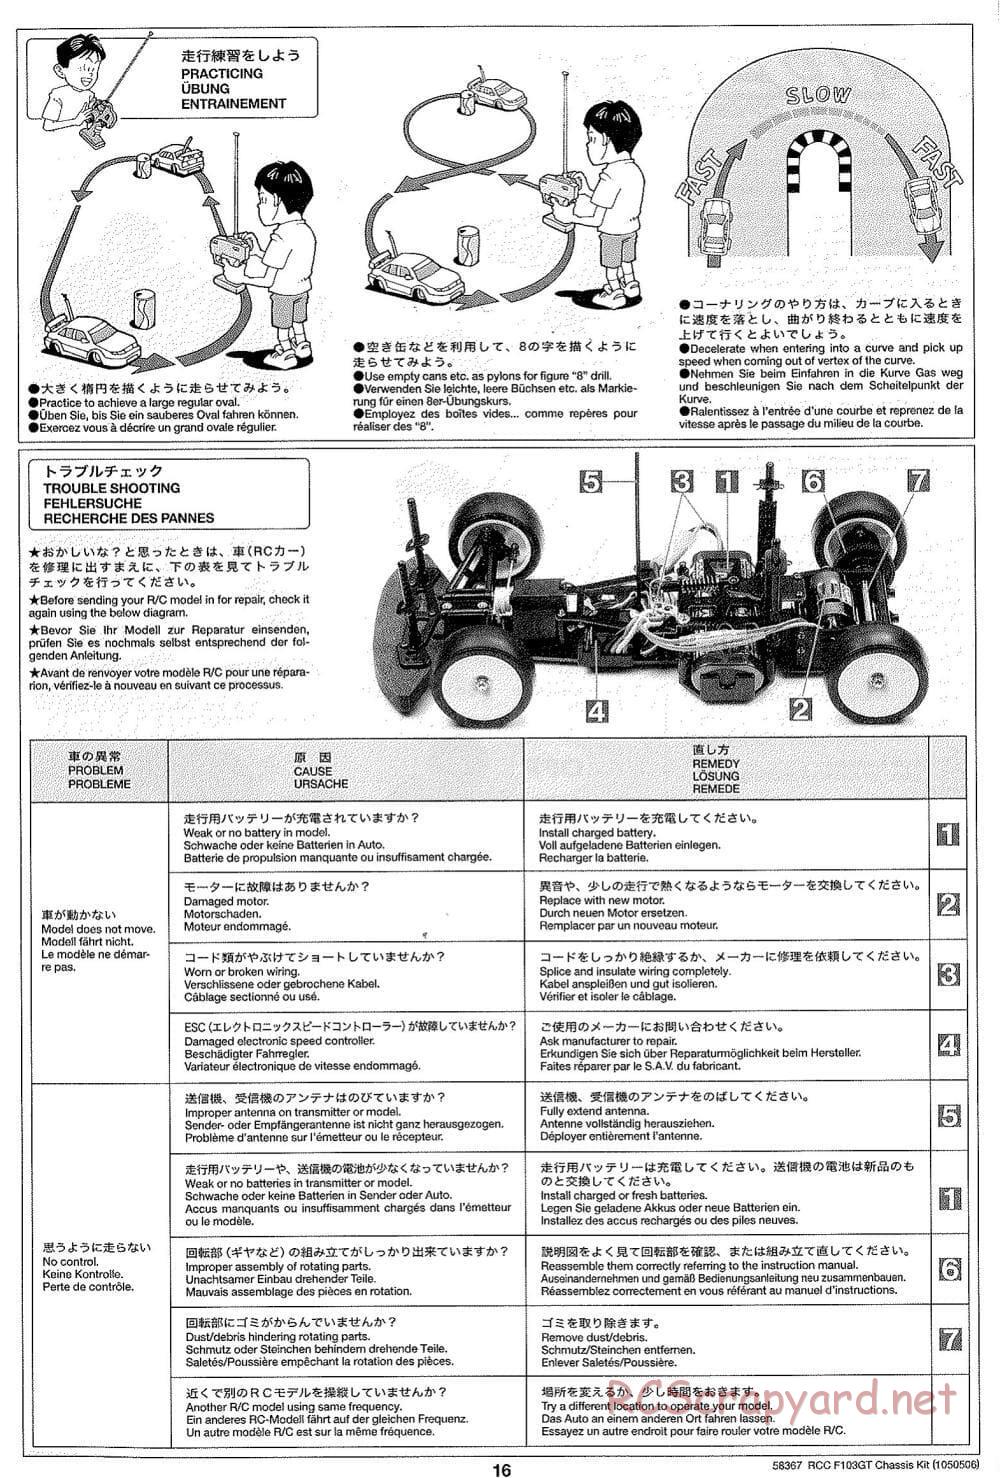 Tamiya - F103GT Chassis Kit - Manual - Page 16